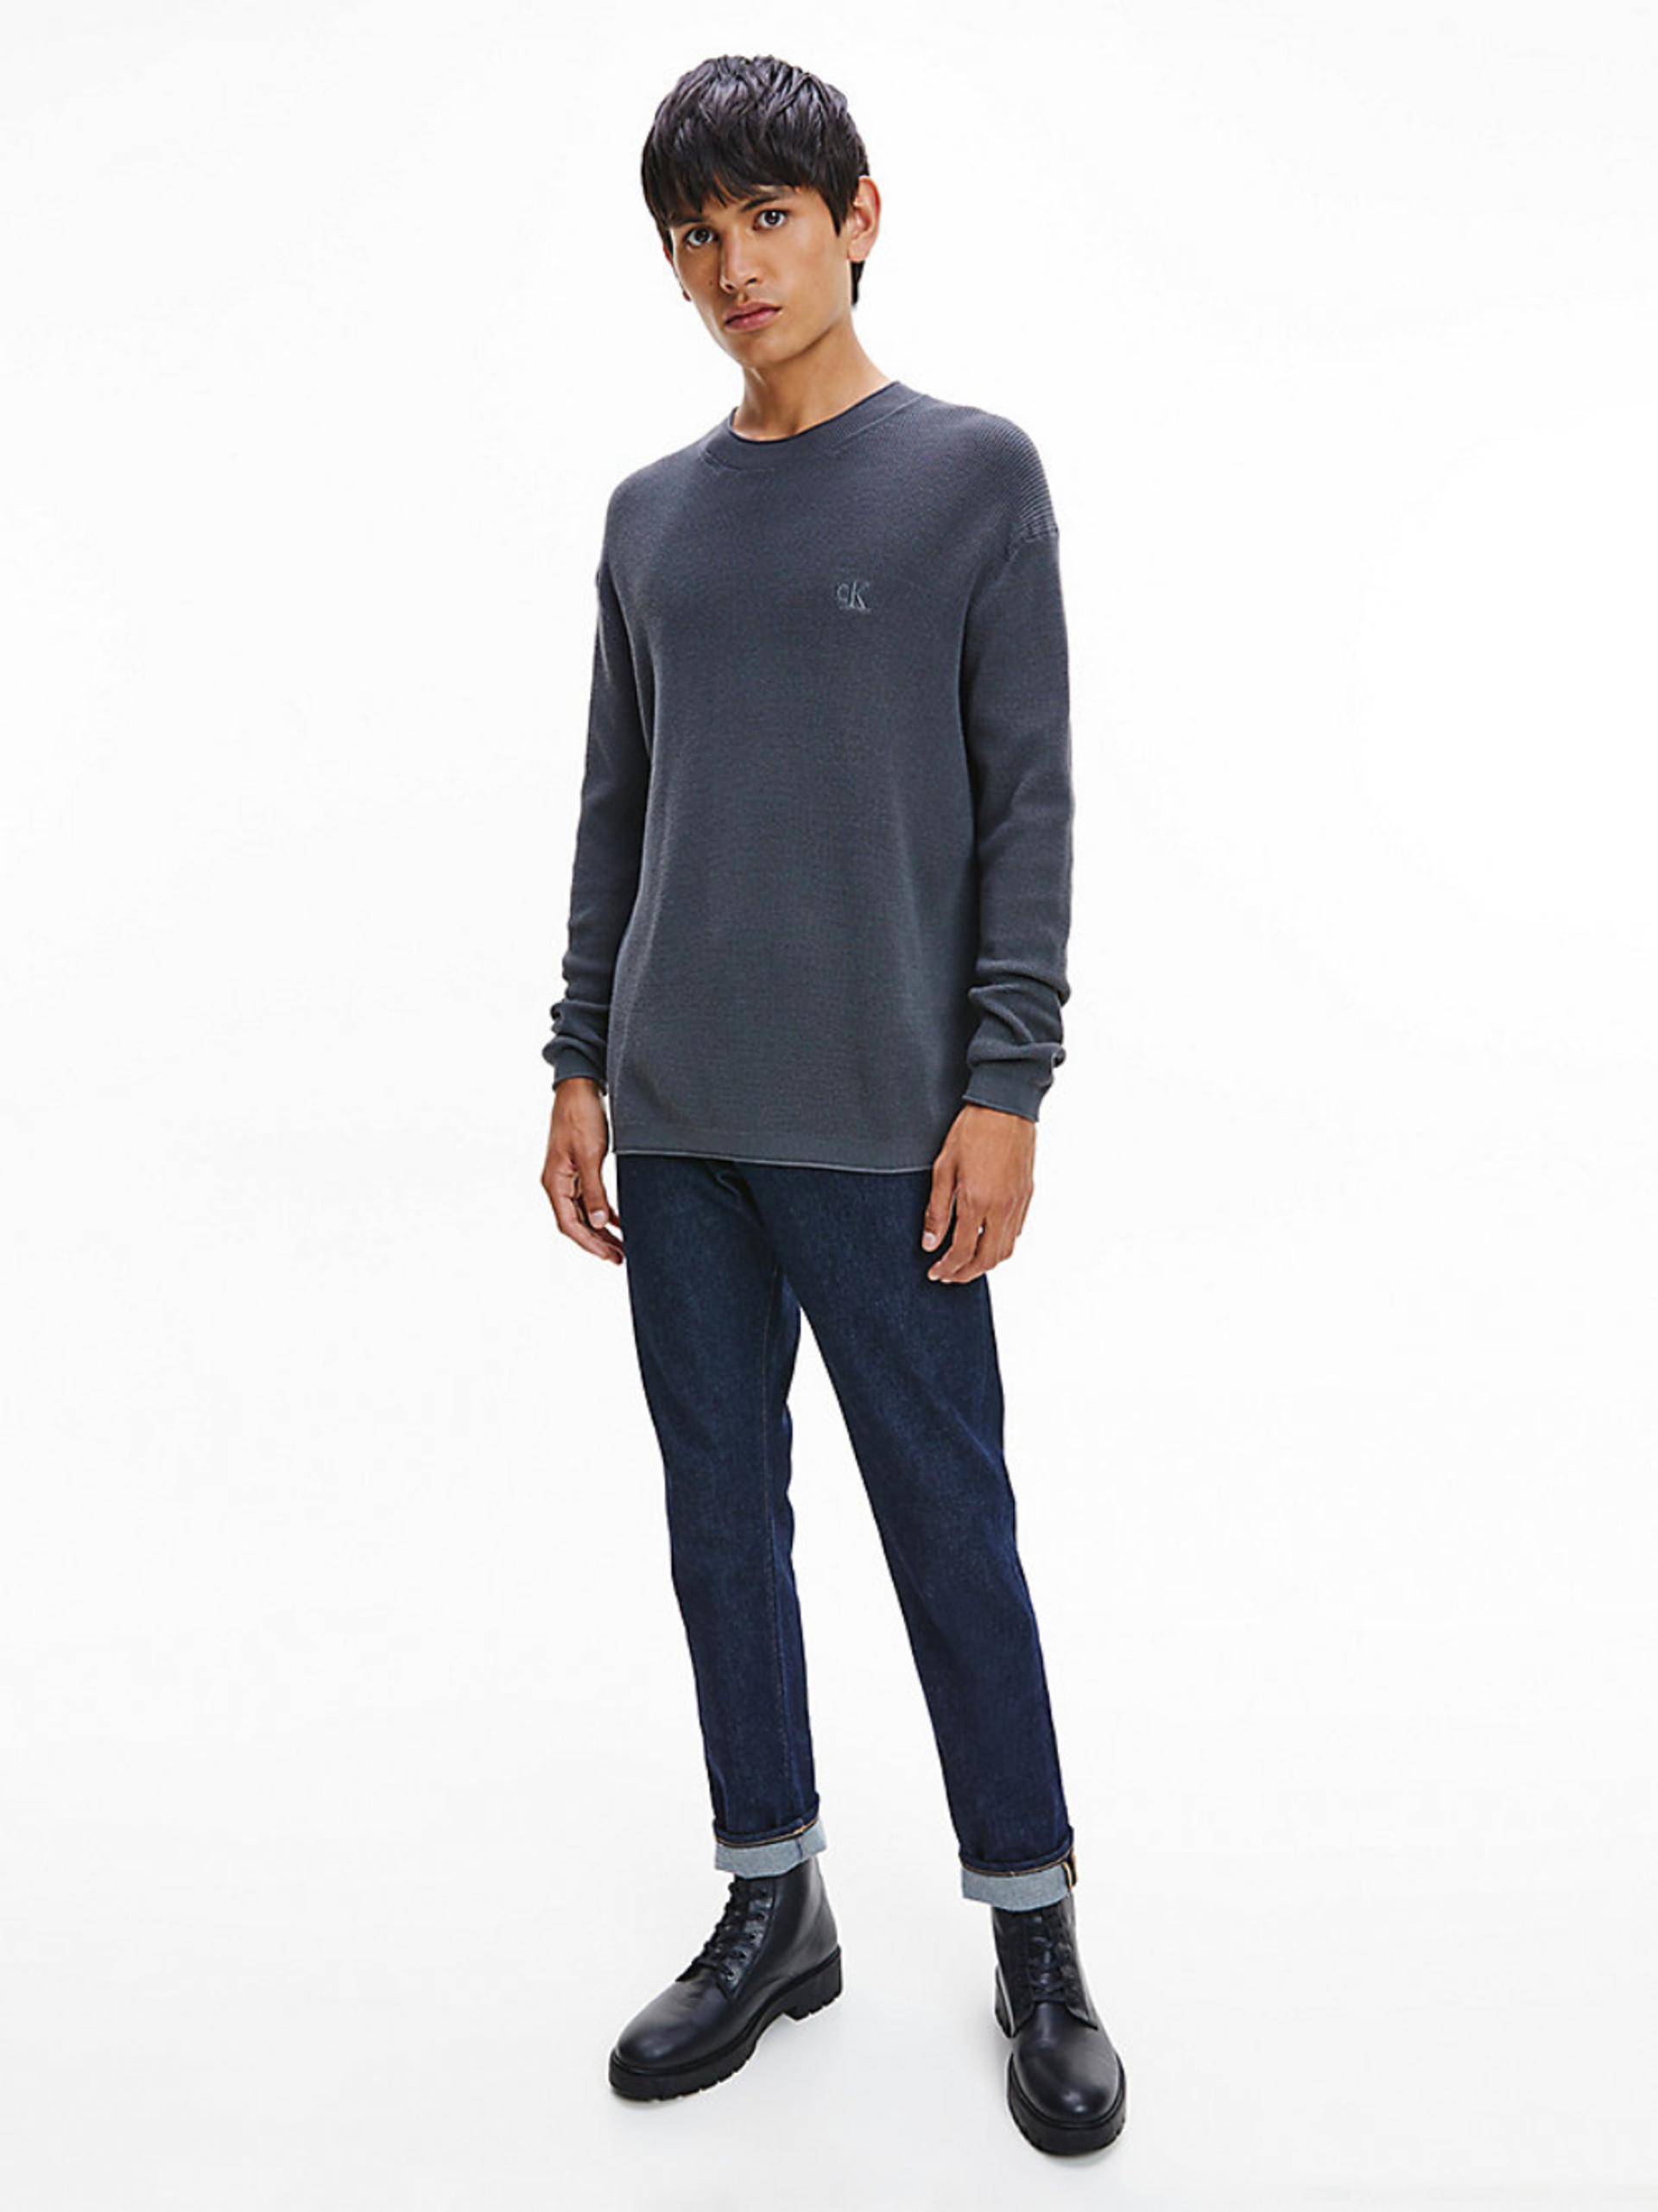 Calvin Klein pánský modrý svetr - XL (PCK)